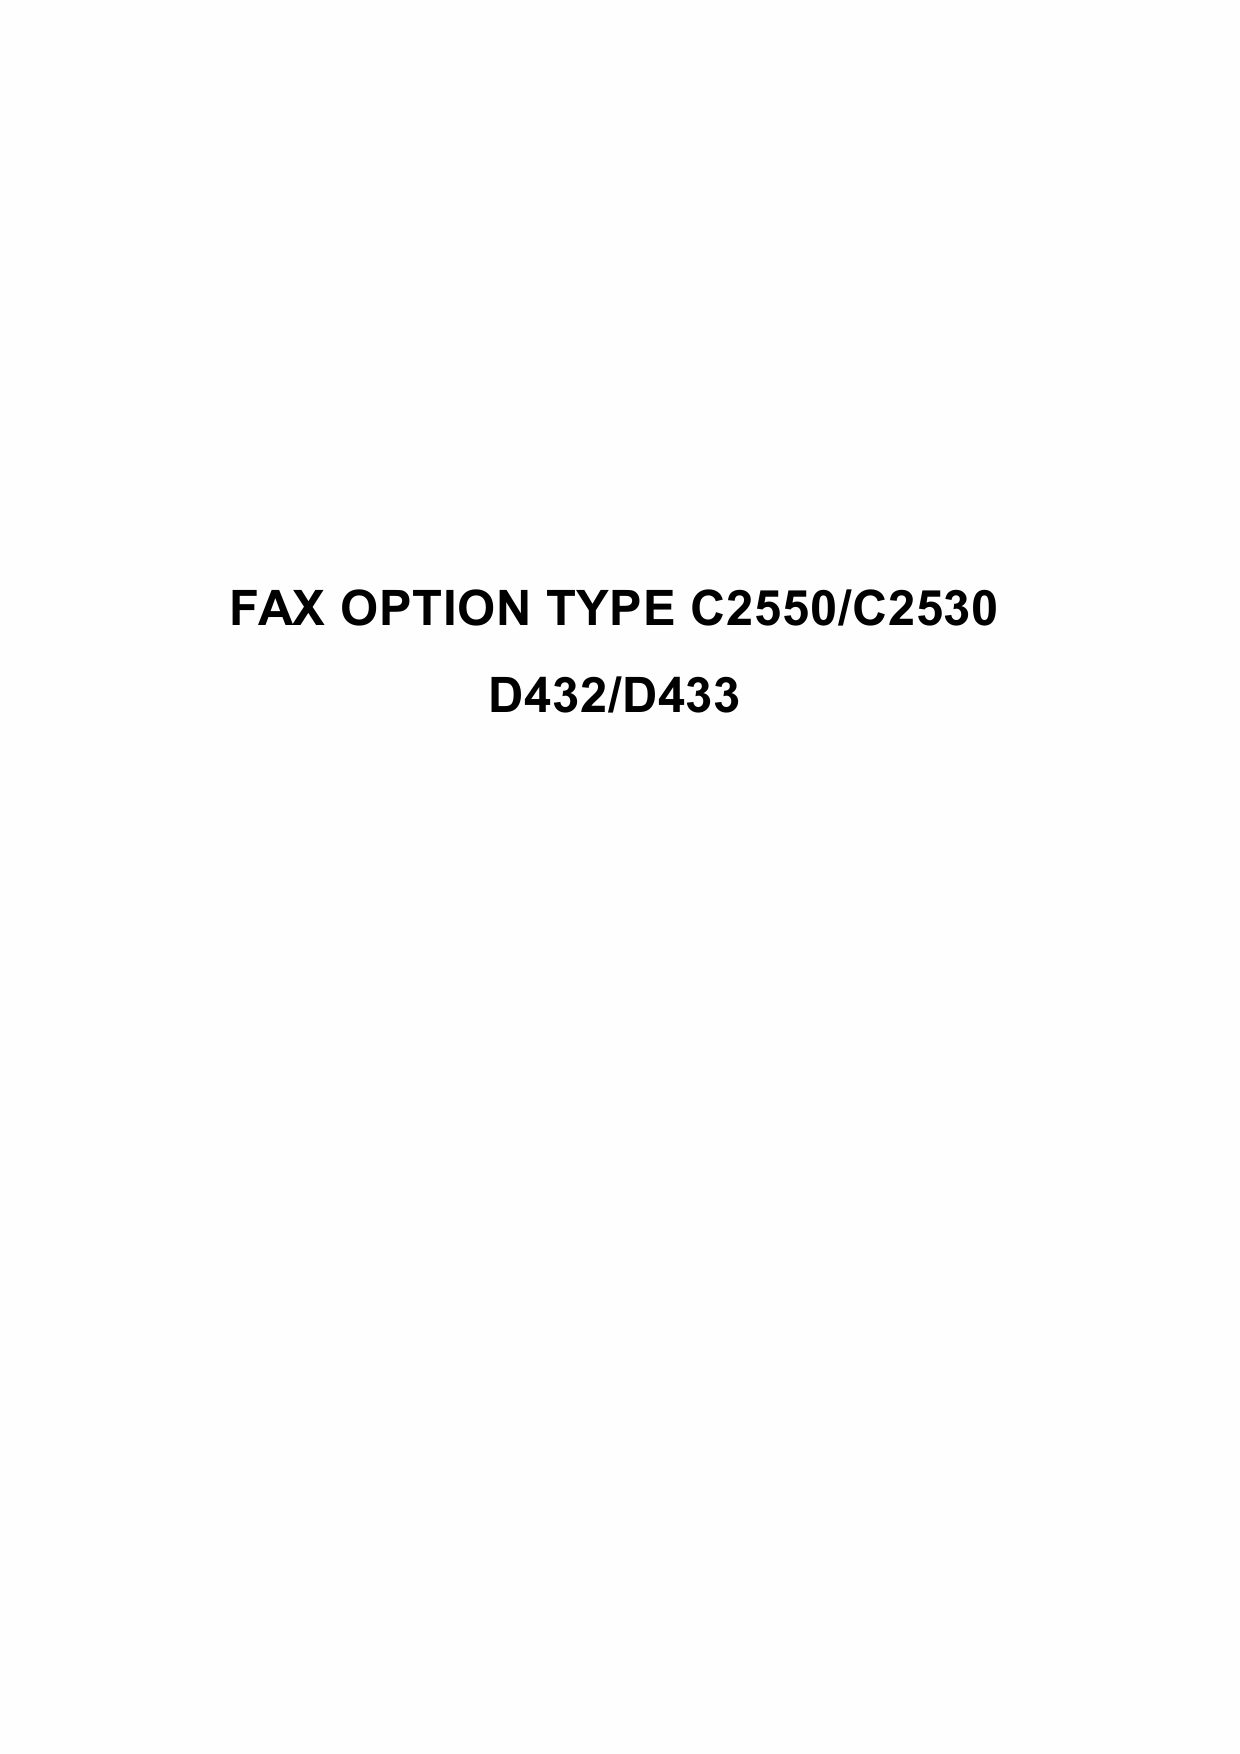 RICOH Options D432 D433 FAX-OPTION-TYPE-C2550-C2530 Service Manual PDF download-1